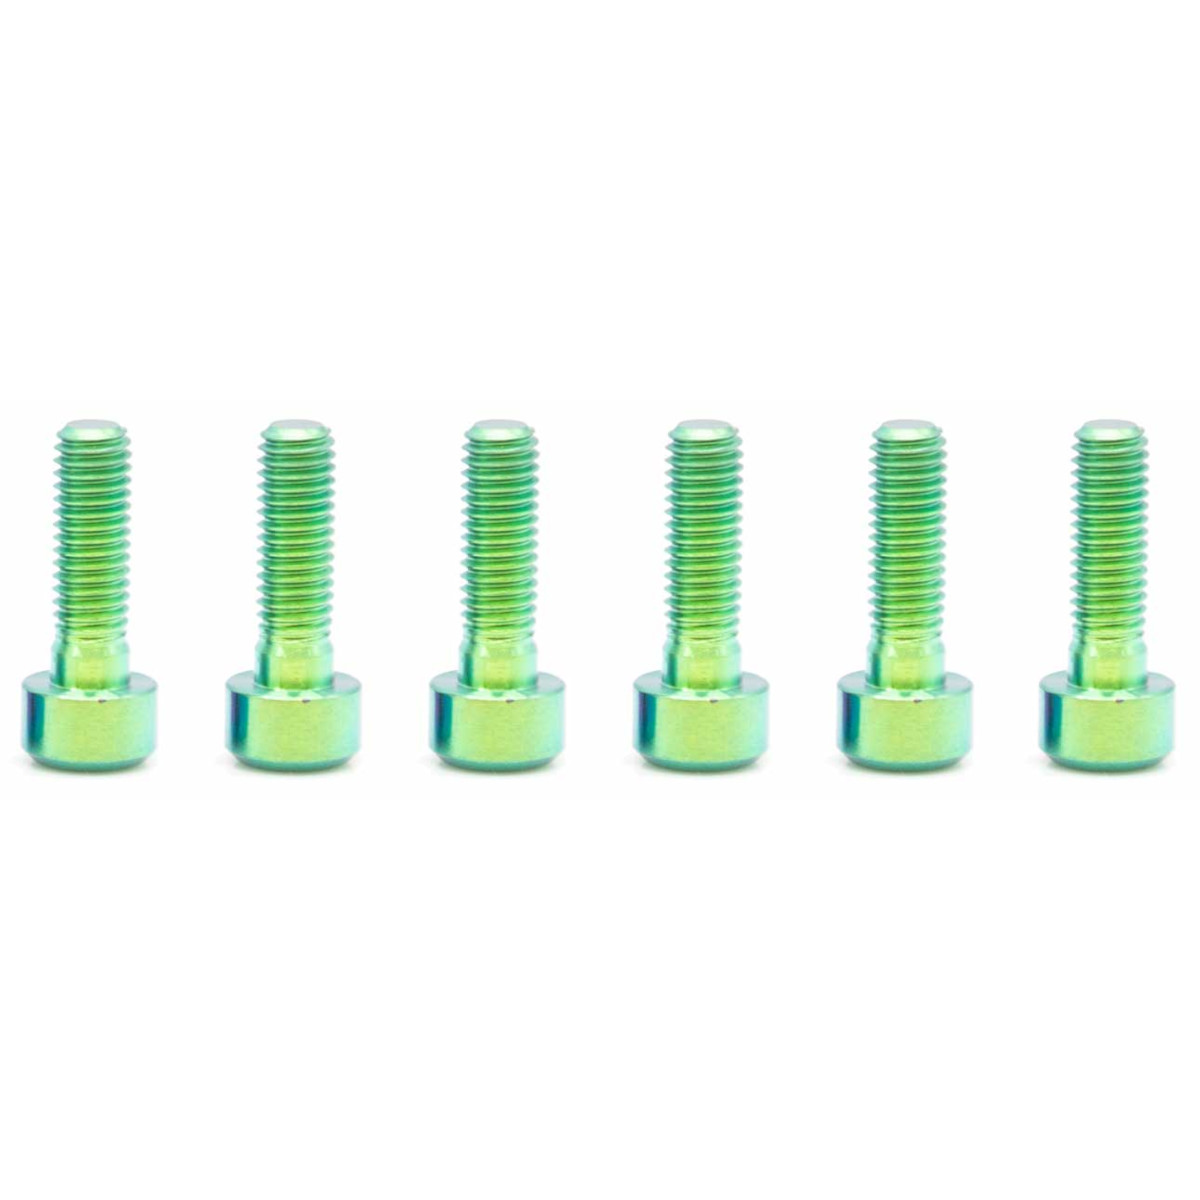 Produktbild von OAK Components Titanschrauben Set - M5x16mm - grün